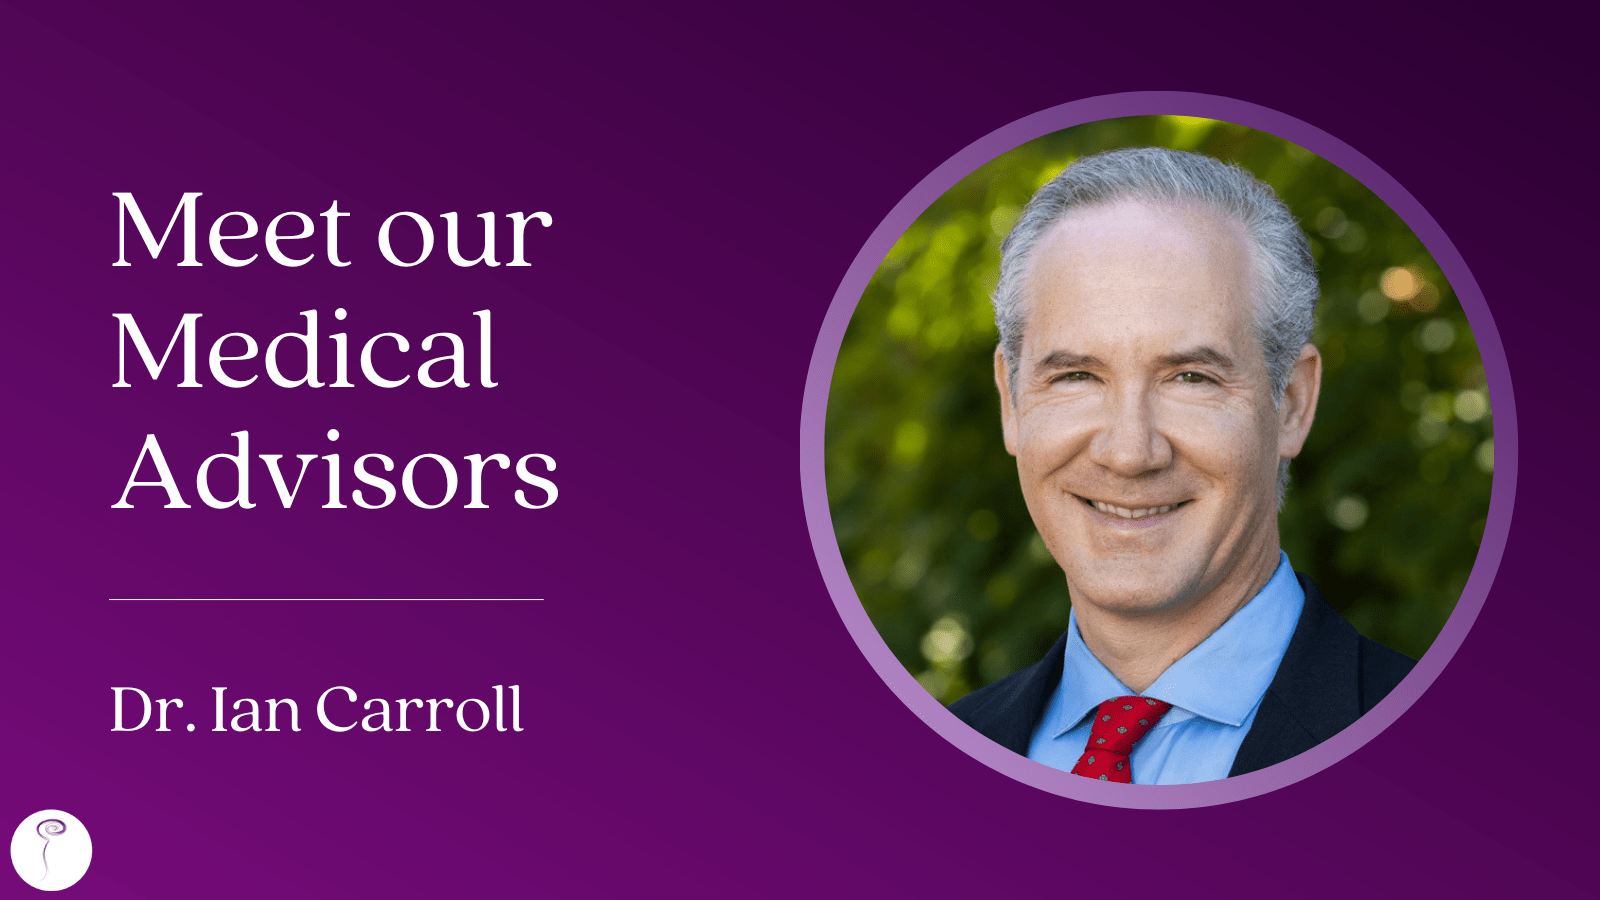 Meet our Medical Advisors: Dr. Ian Carroll